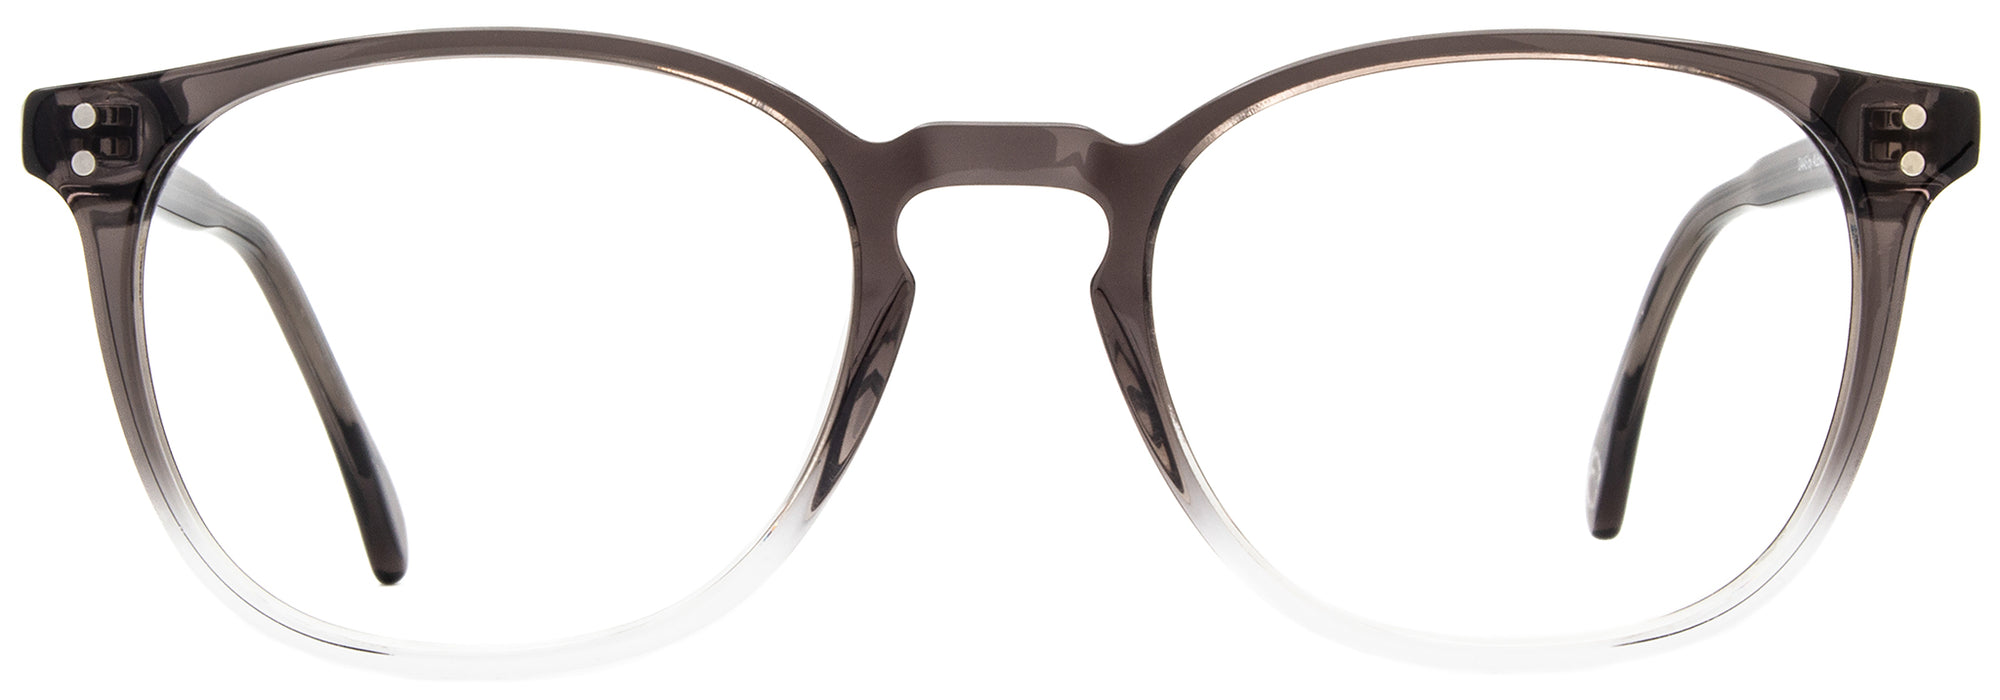 Alexander Daas - Milan Eyeglasses - Gray Gradient - Front View